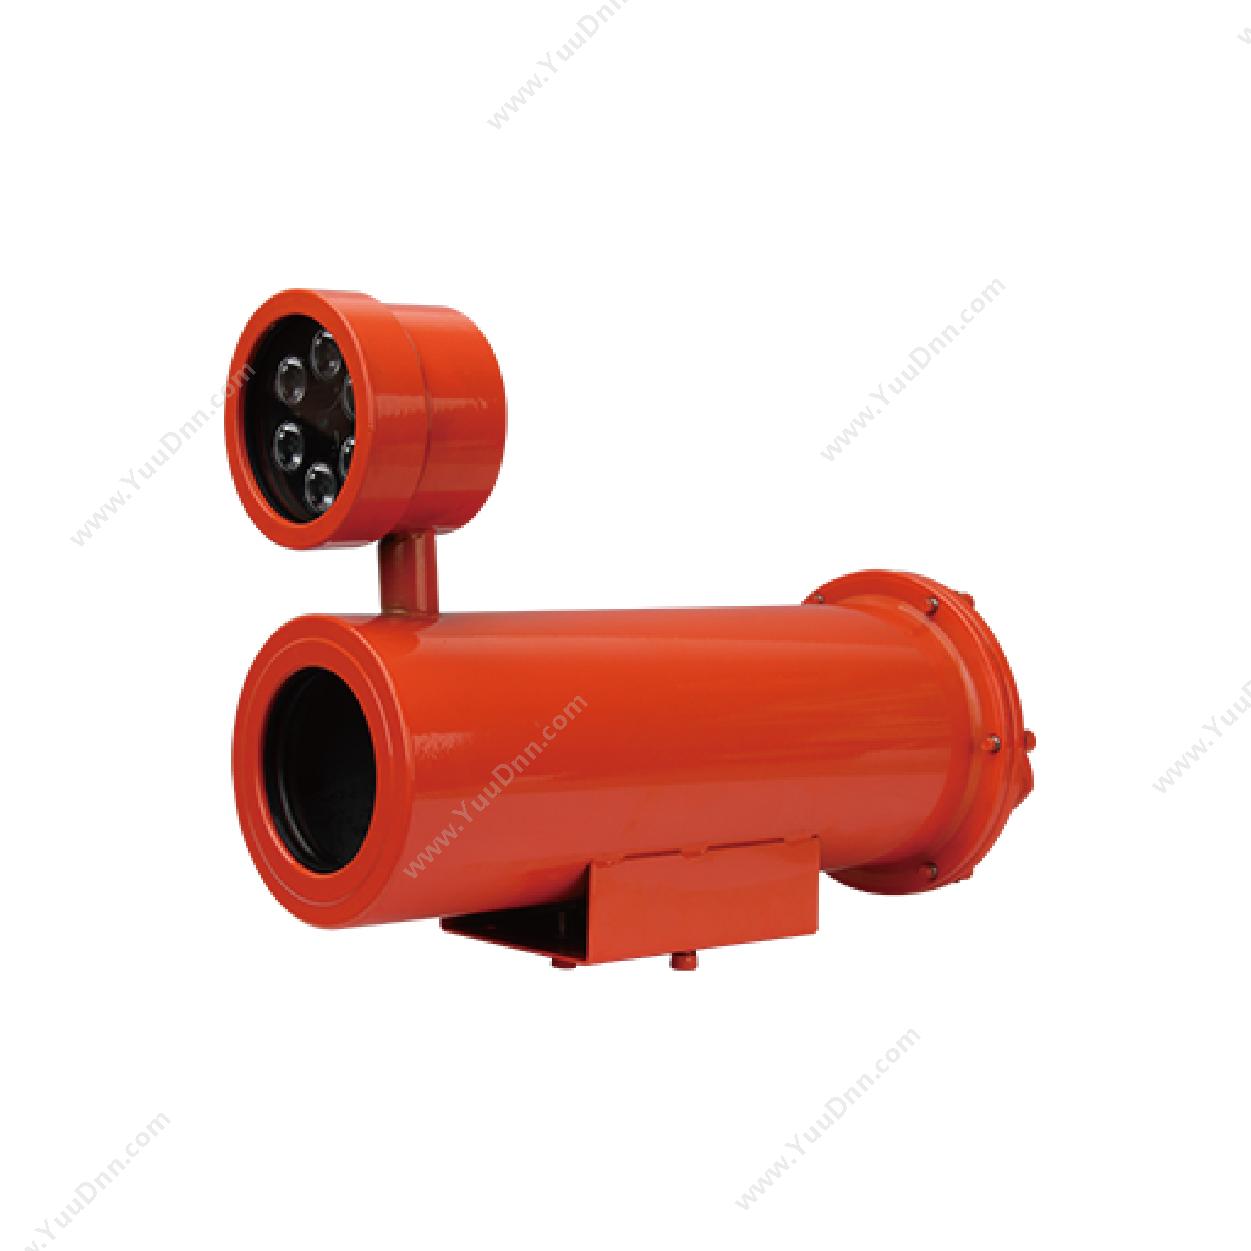 集光 APG-IPC-FF8810RJAD 防腐型200万防爆红外网络摄像机 8mm 防爆网络摄像机